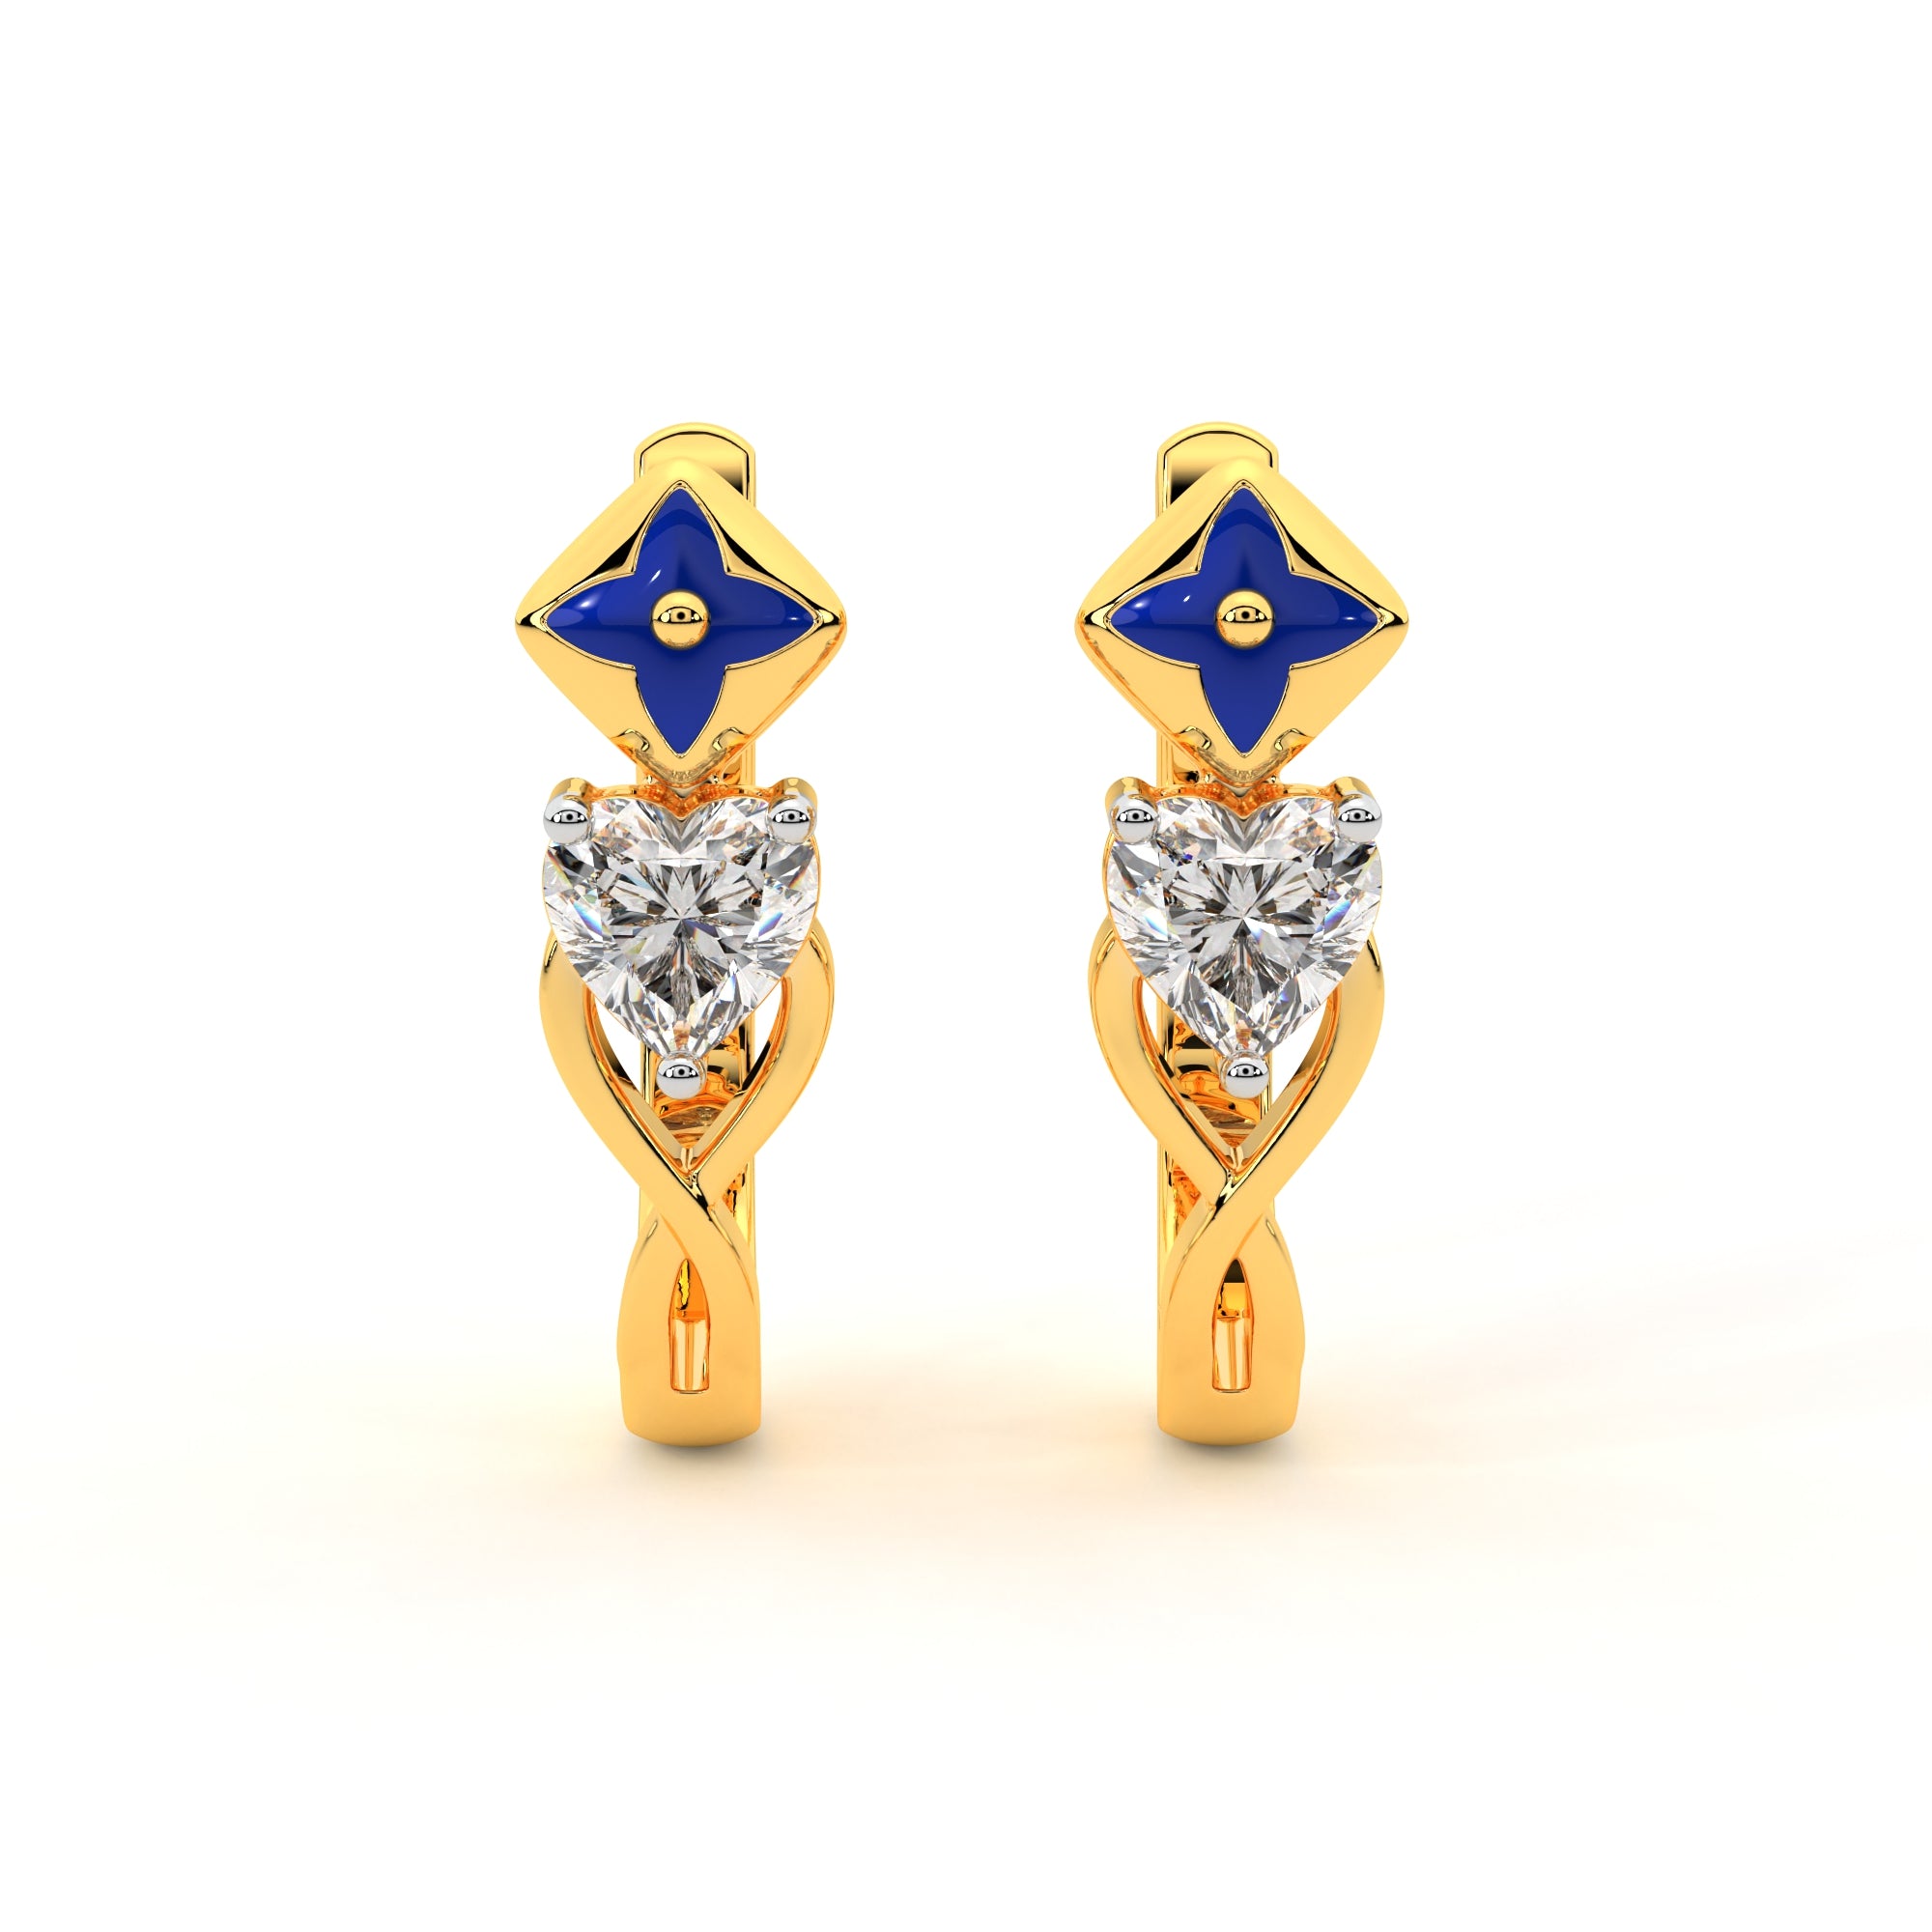 Starlit Heart Diamond Earrings